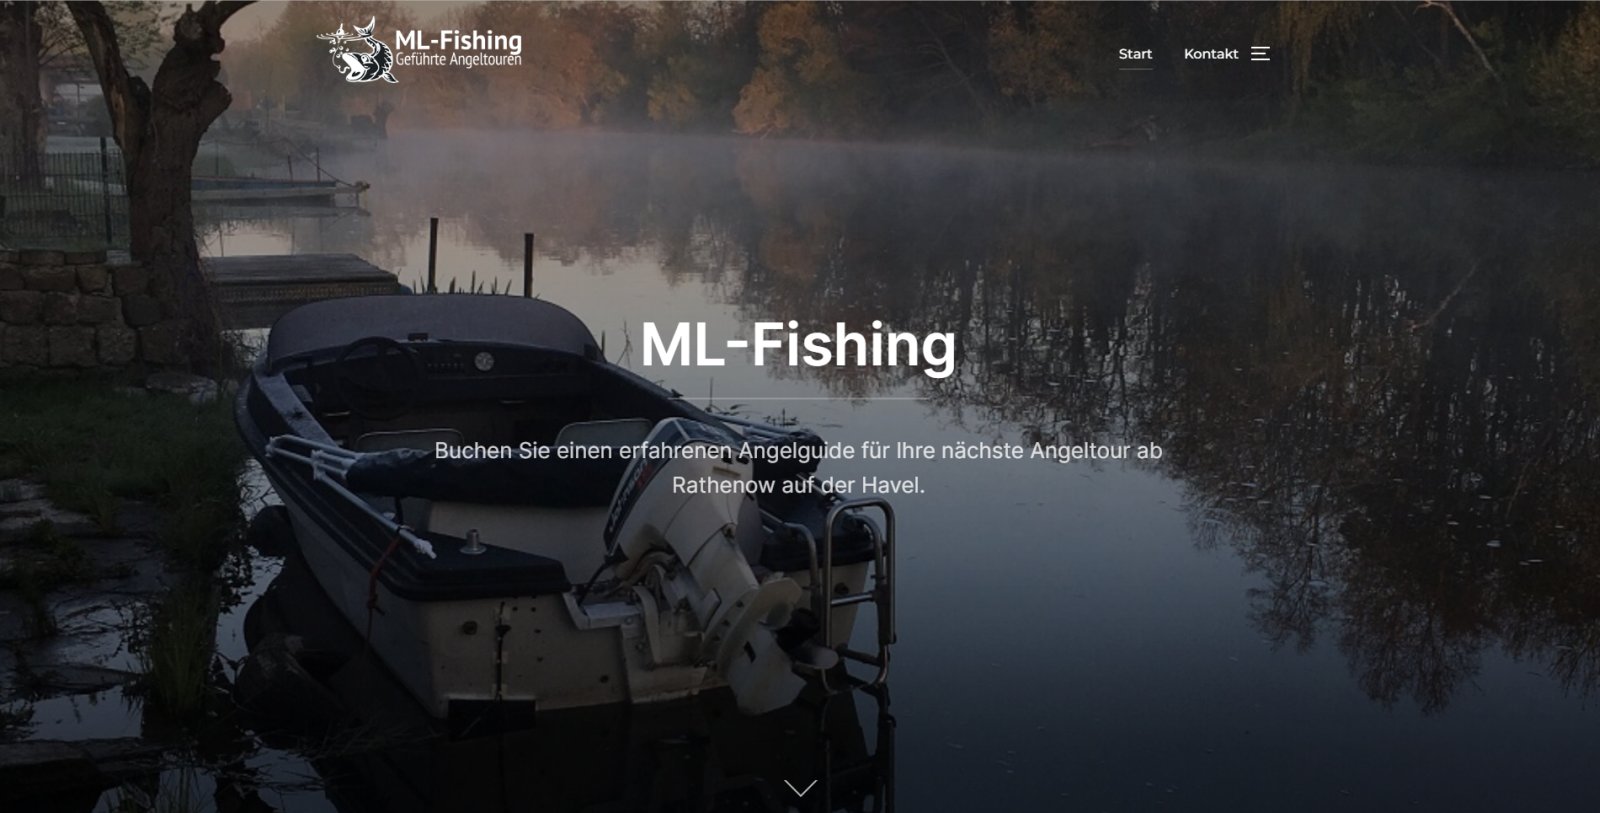 ML-Fishing - Angelguide buchen